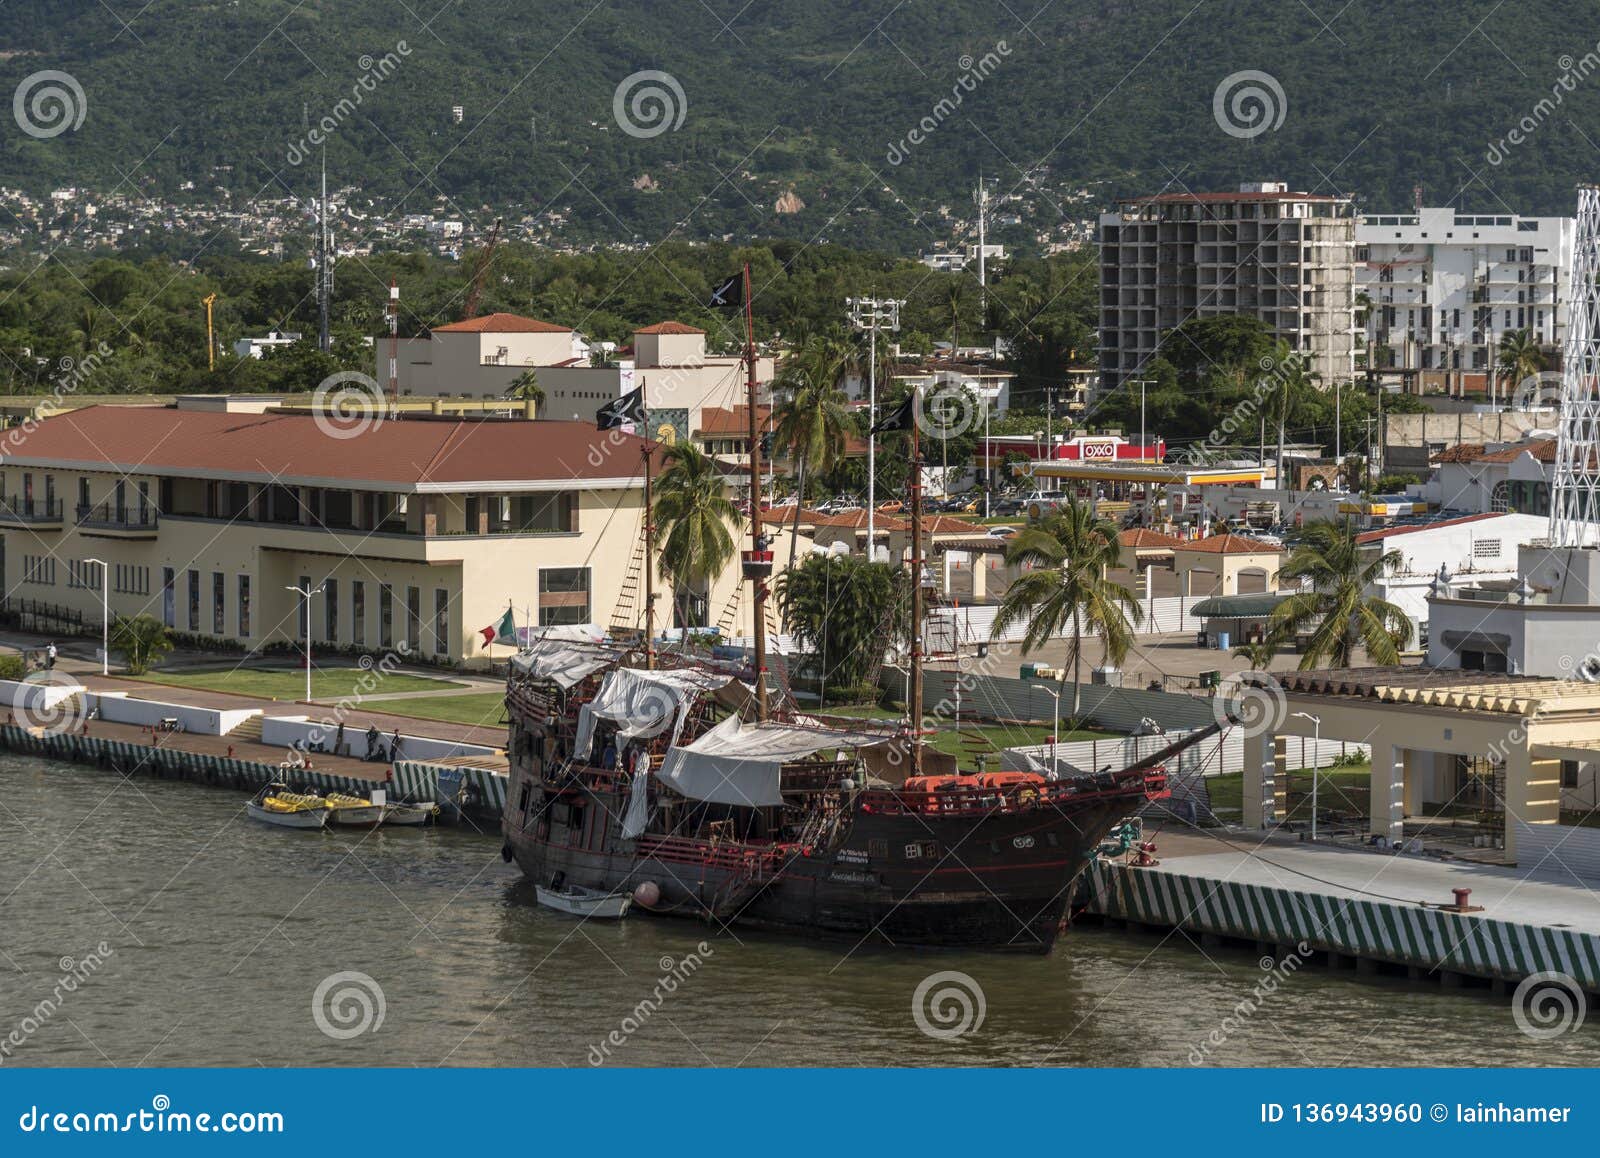 Balade en bateau pirate à Puerto Vallarta